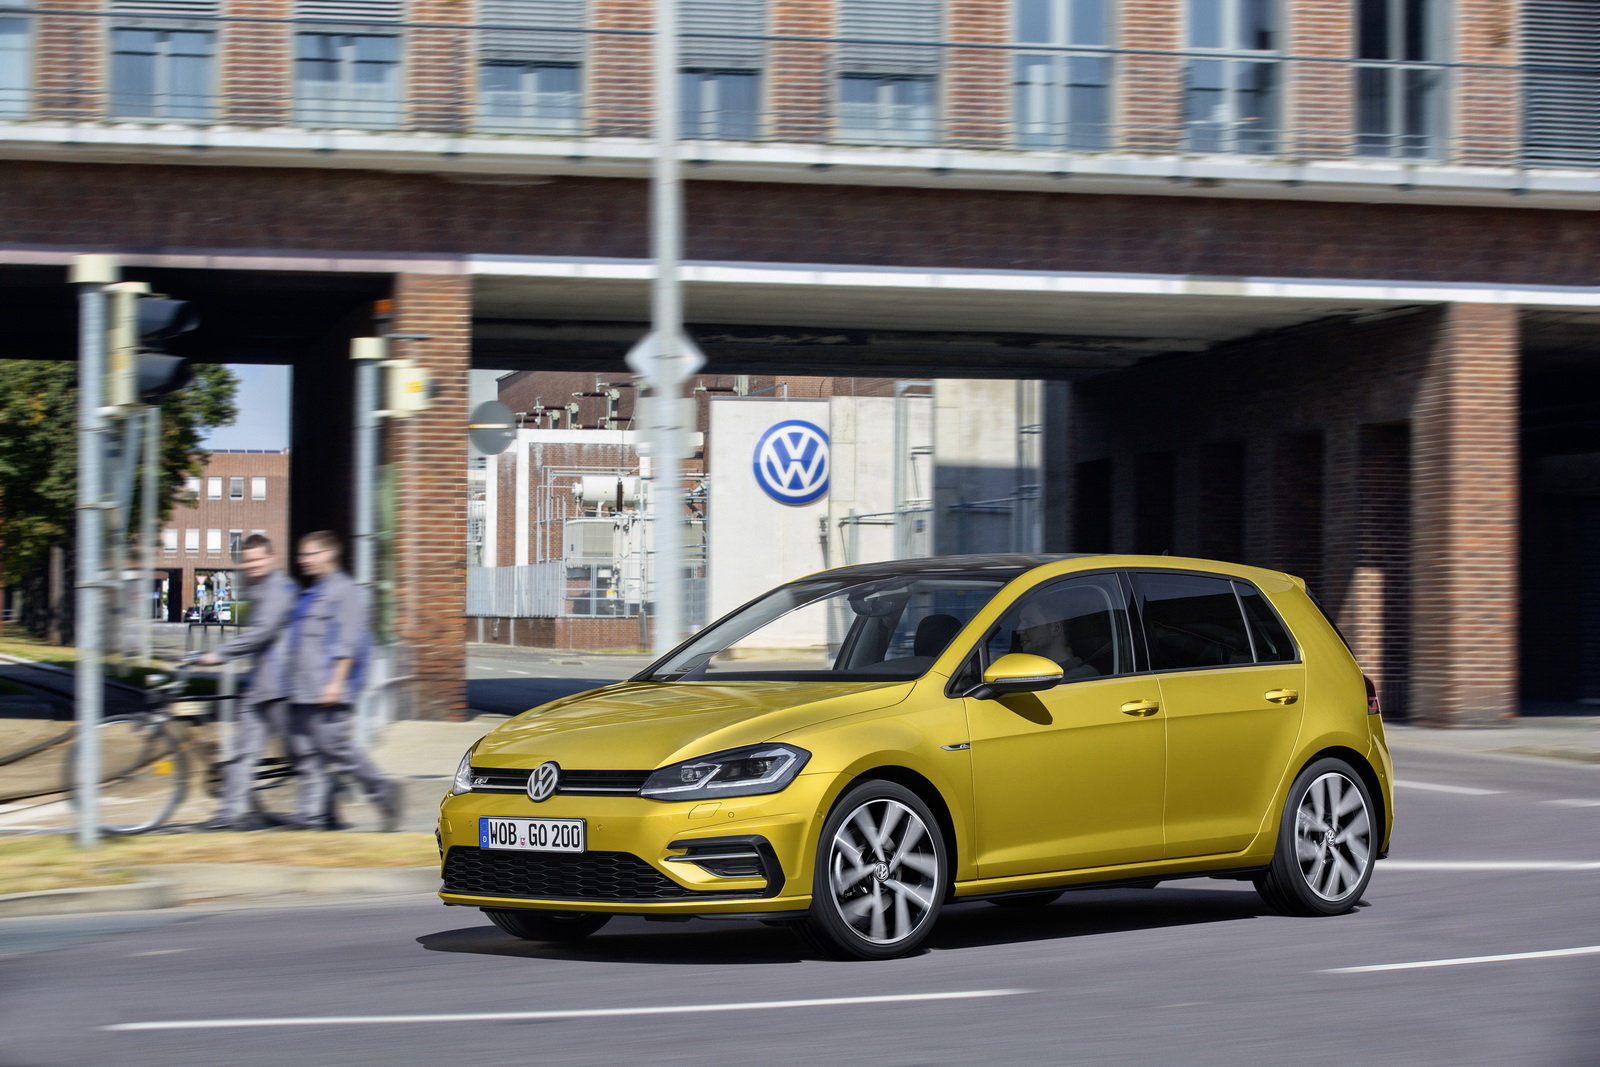 Volkswagen představil Golf s novou revoluční jednotkou 1.5 TSI ACT Bluemotion